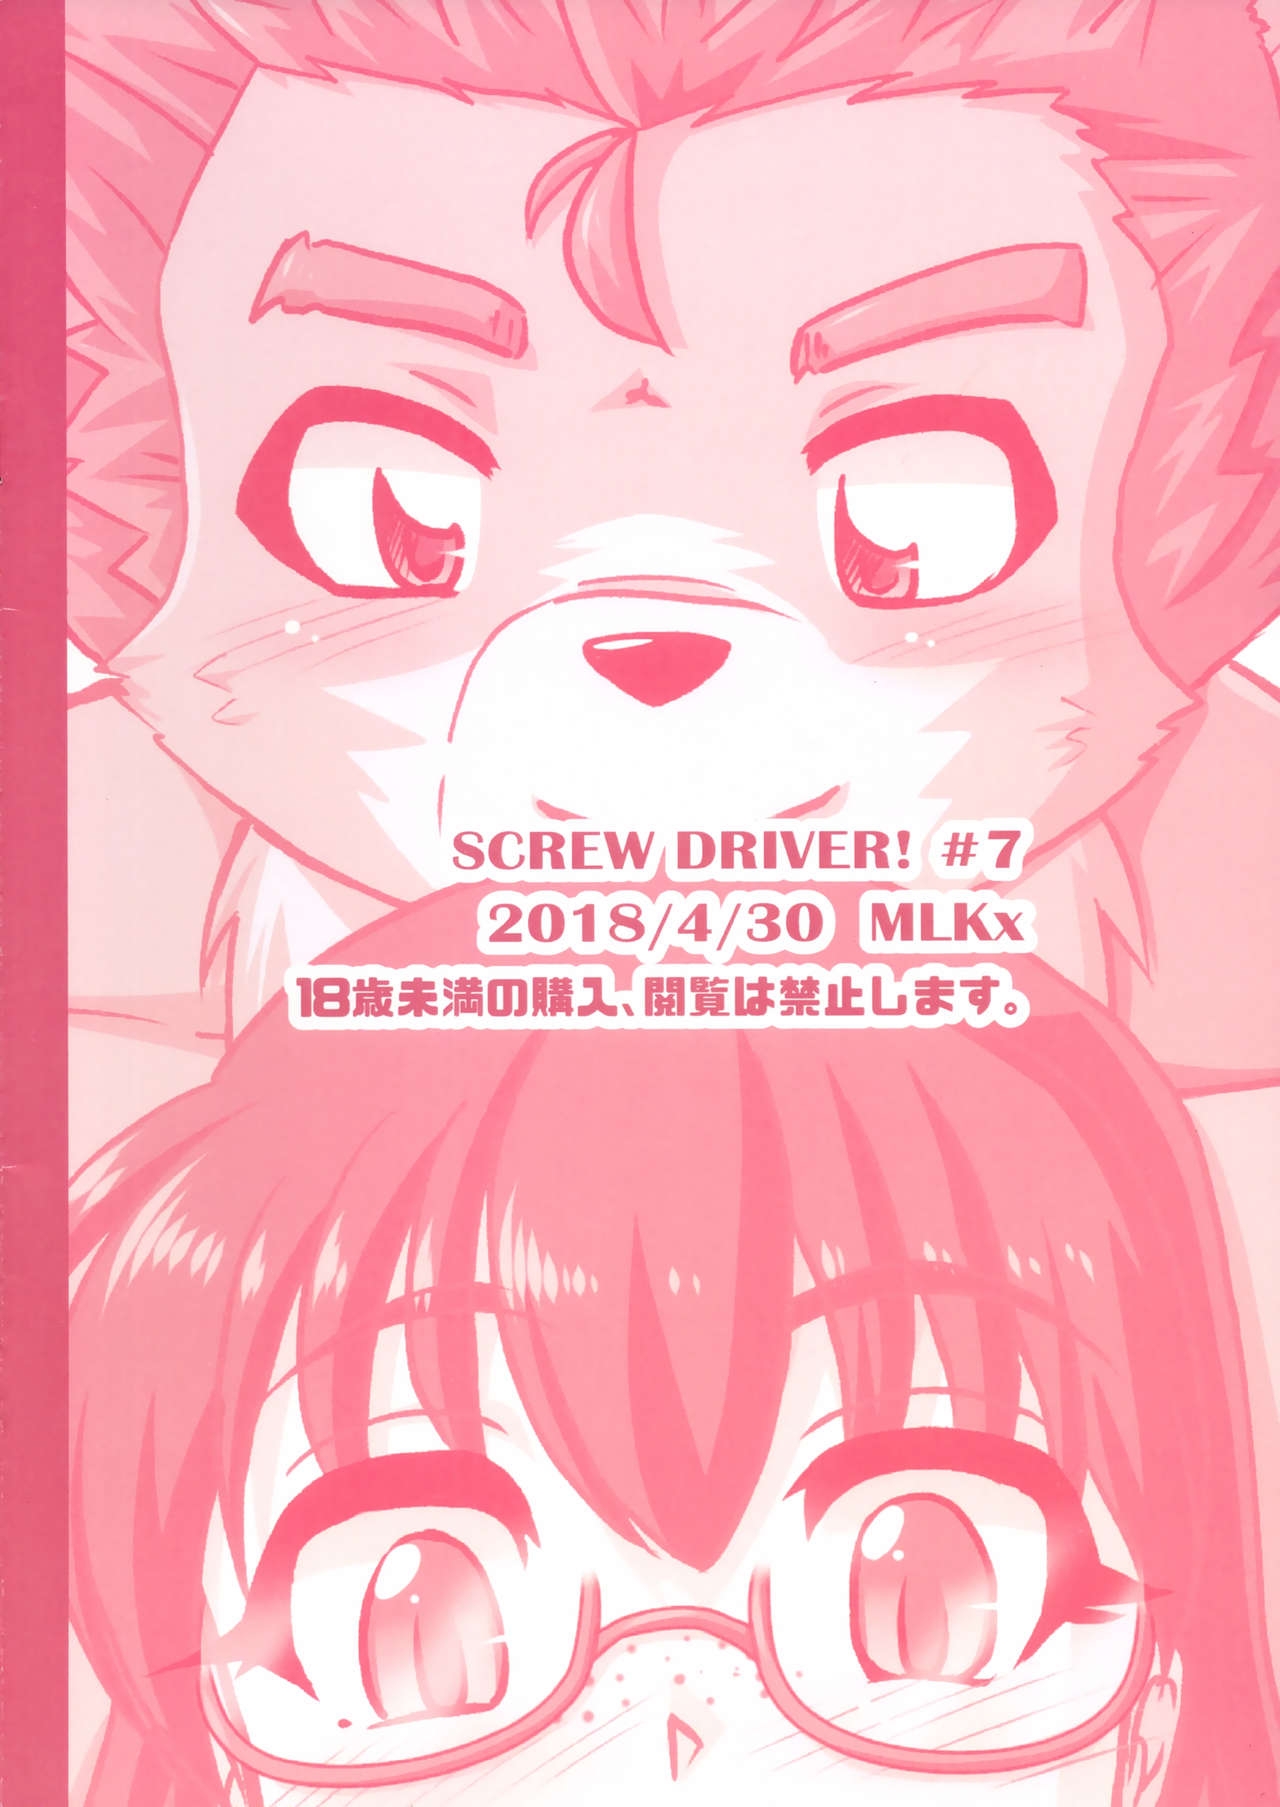 (Kemoket 7) [MLKx (MilkExplorer)] Screw Driver!7 21